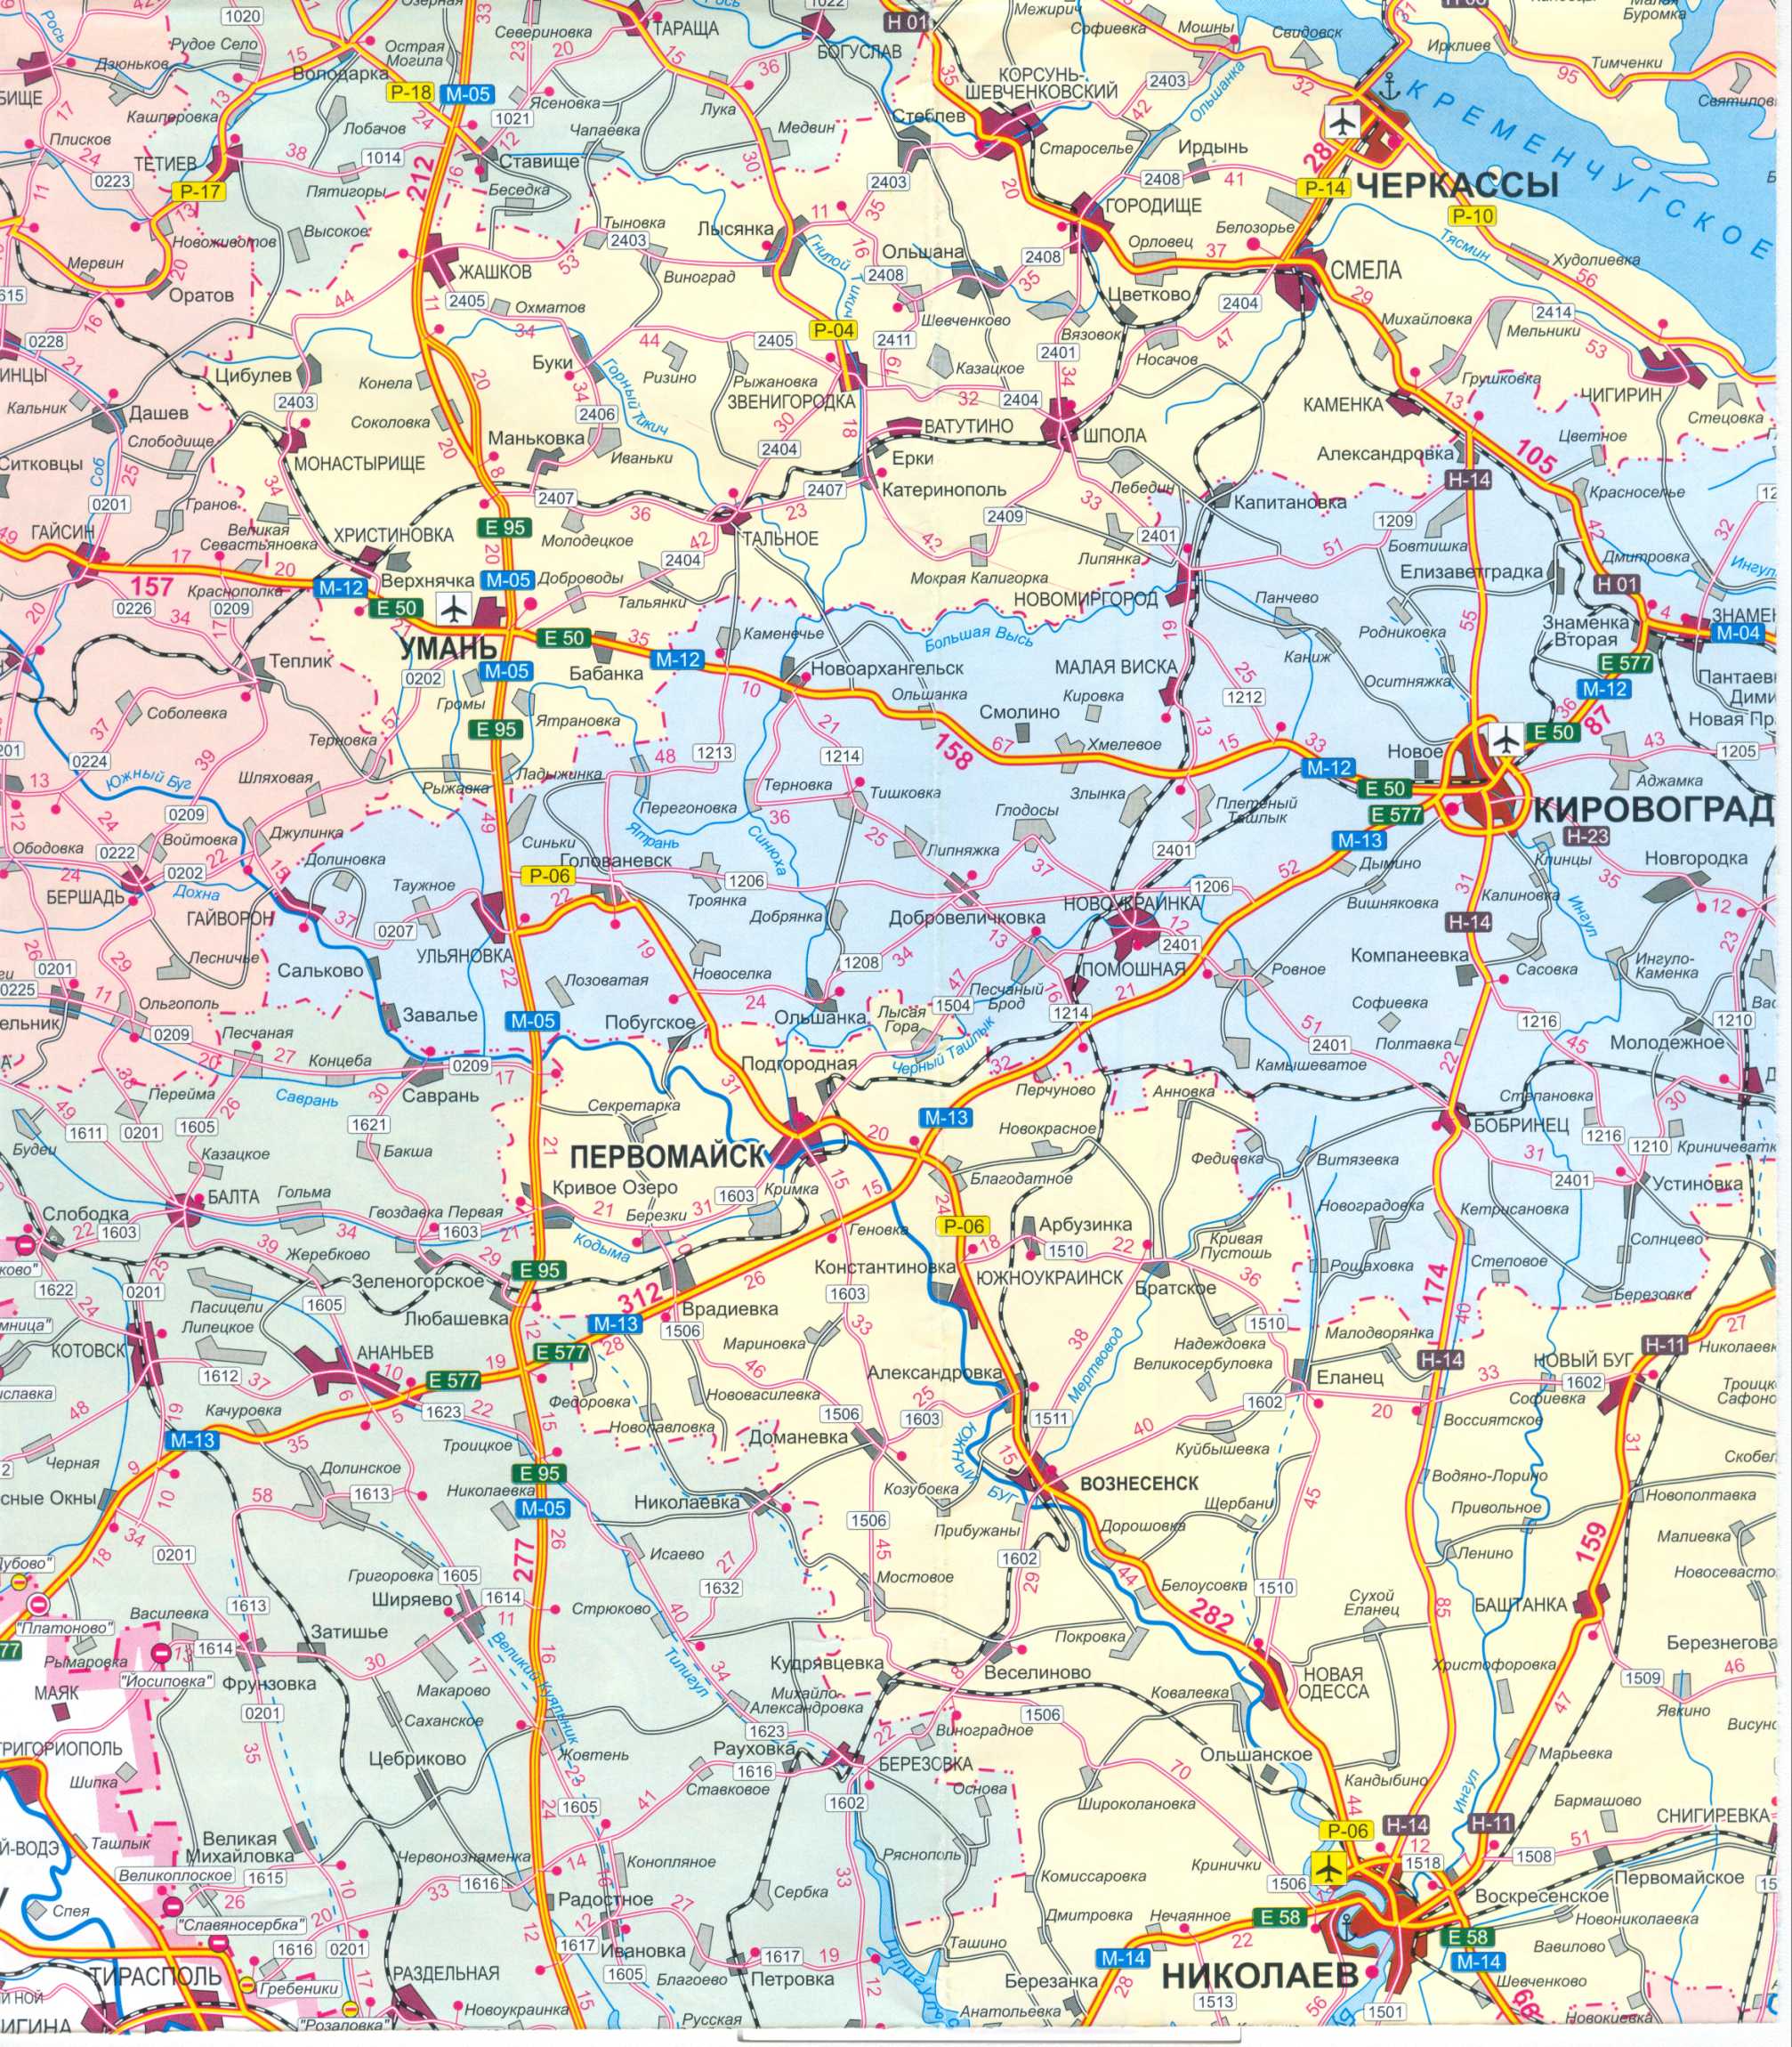 Karte der Ukraine frei. Road Map der Ukraine kostenlos herunterladen. Große Karte von Ukraine Straßen frei, C1